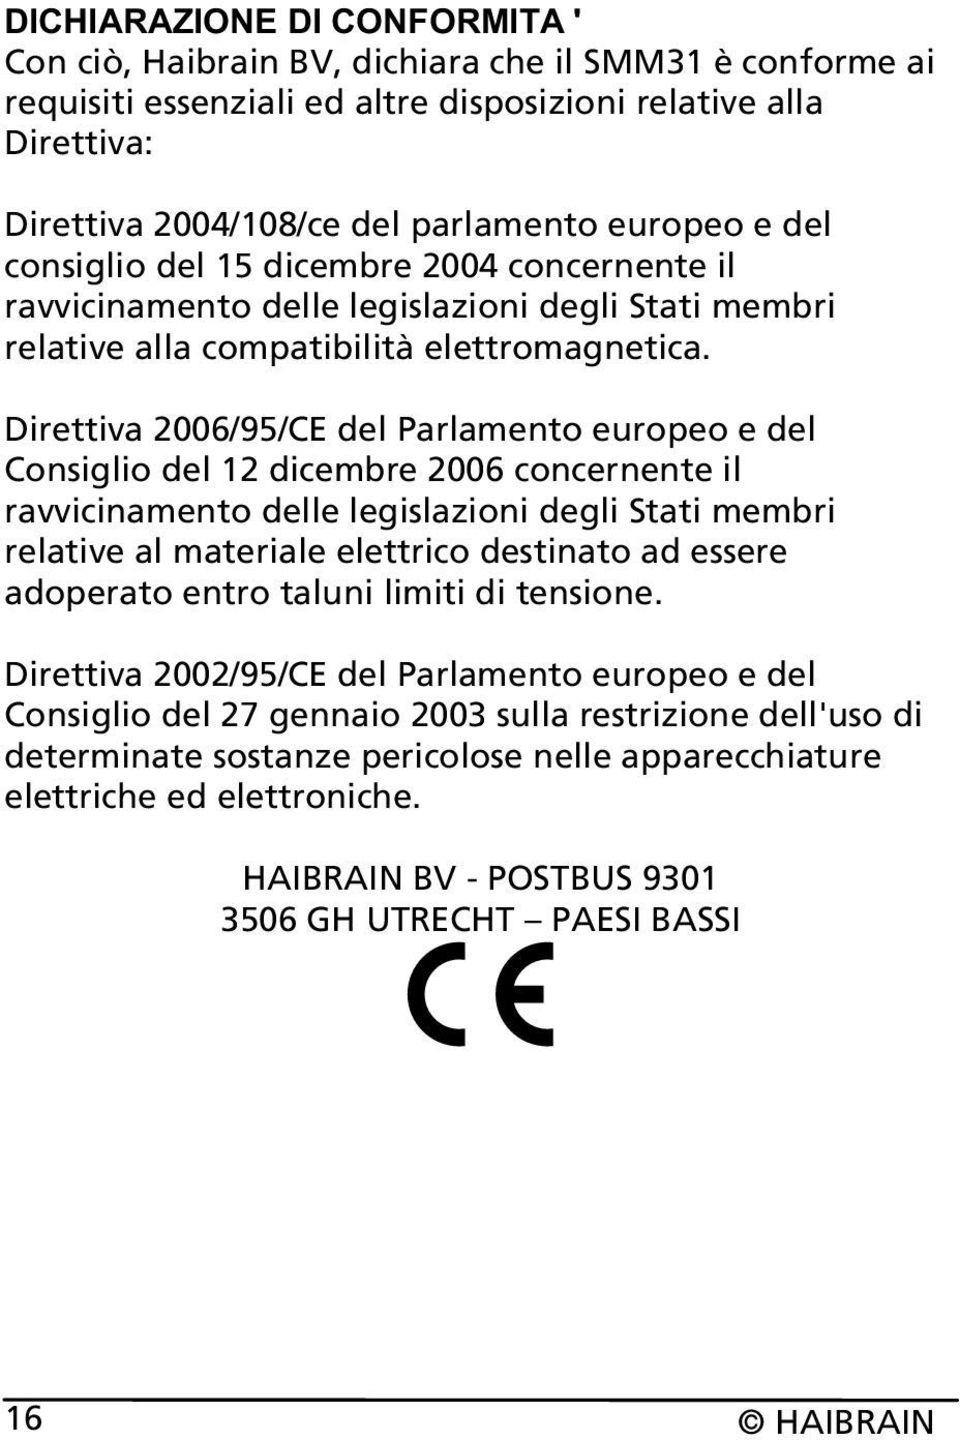 Direttiva 2006/95/CE del Parlamento europeo e del Consiglio del 12 dicembre 2006 concernente il ravvicinamento delle legislazioni degli Stati membri relative al materiale elettrico destinato ad